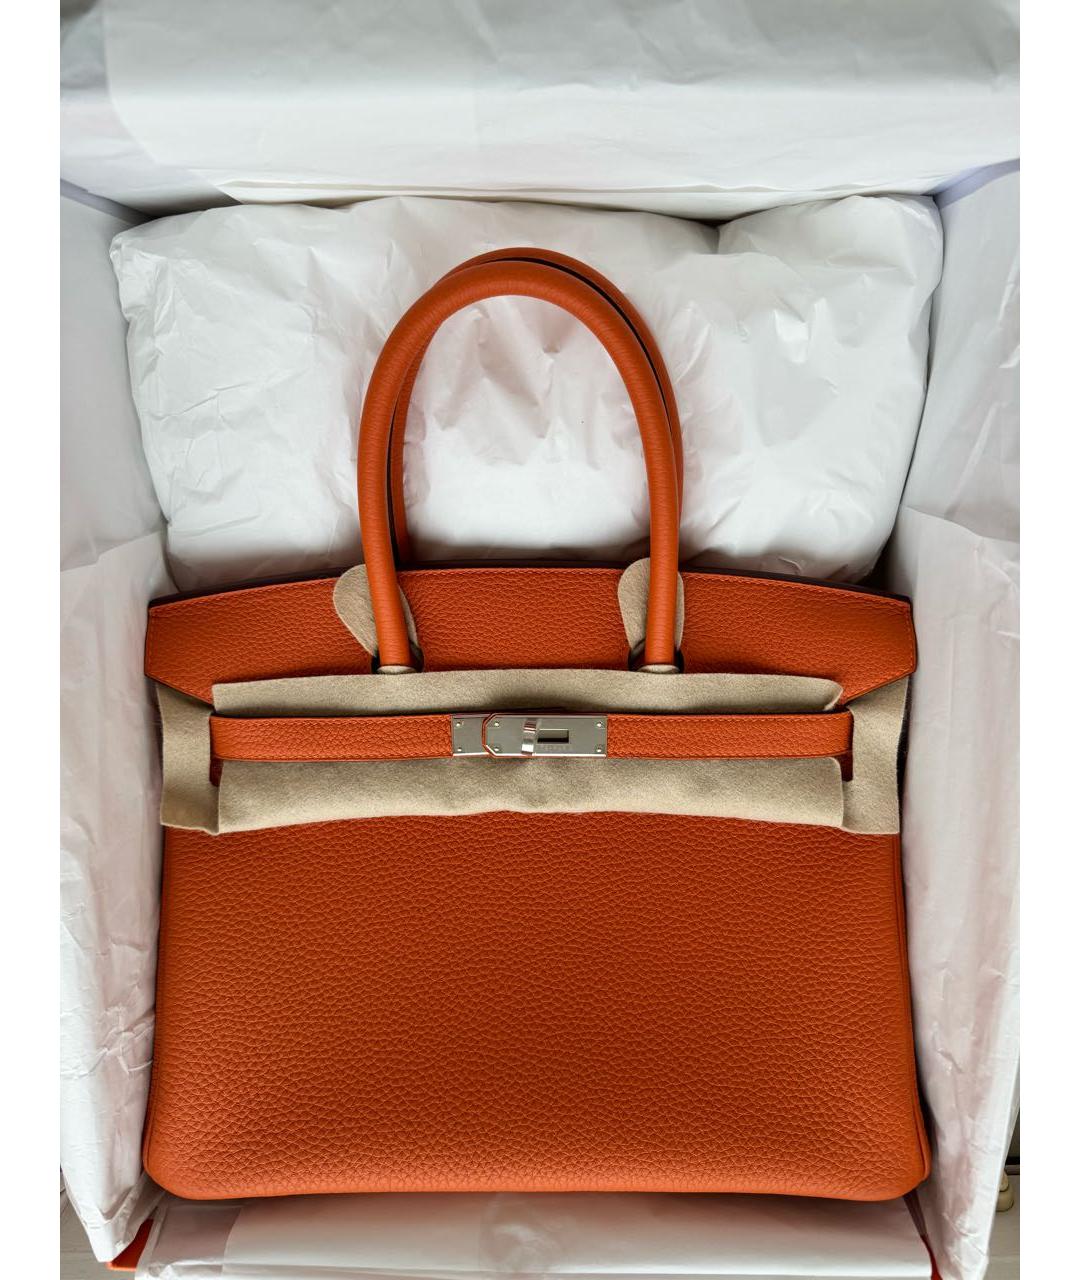 HERMES Оранжевая кожаная сумка с короткими ручками, фото 3